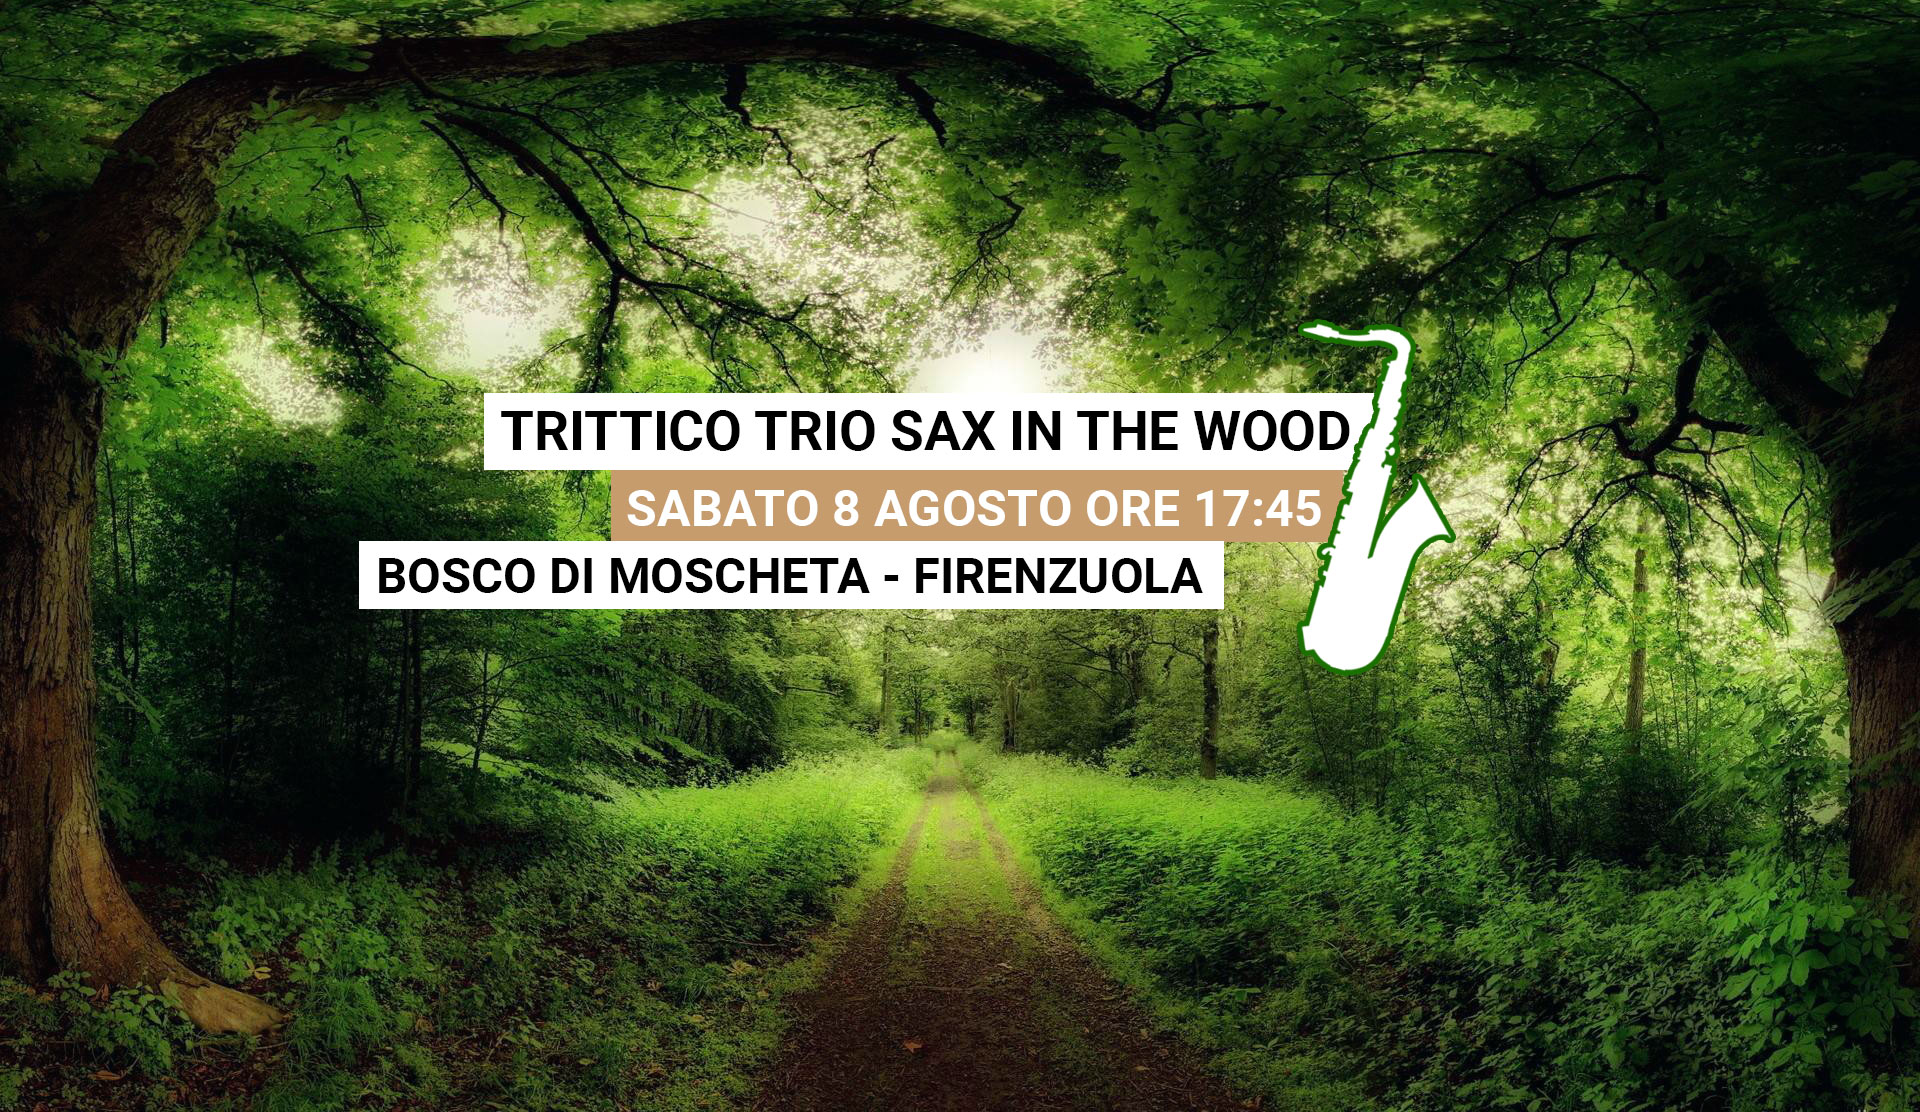 TritticoTrio live@Bosco in Musica 8 Agosto ore 17:45 Moscheta